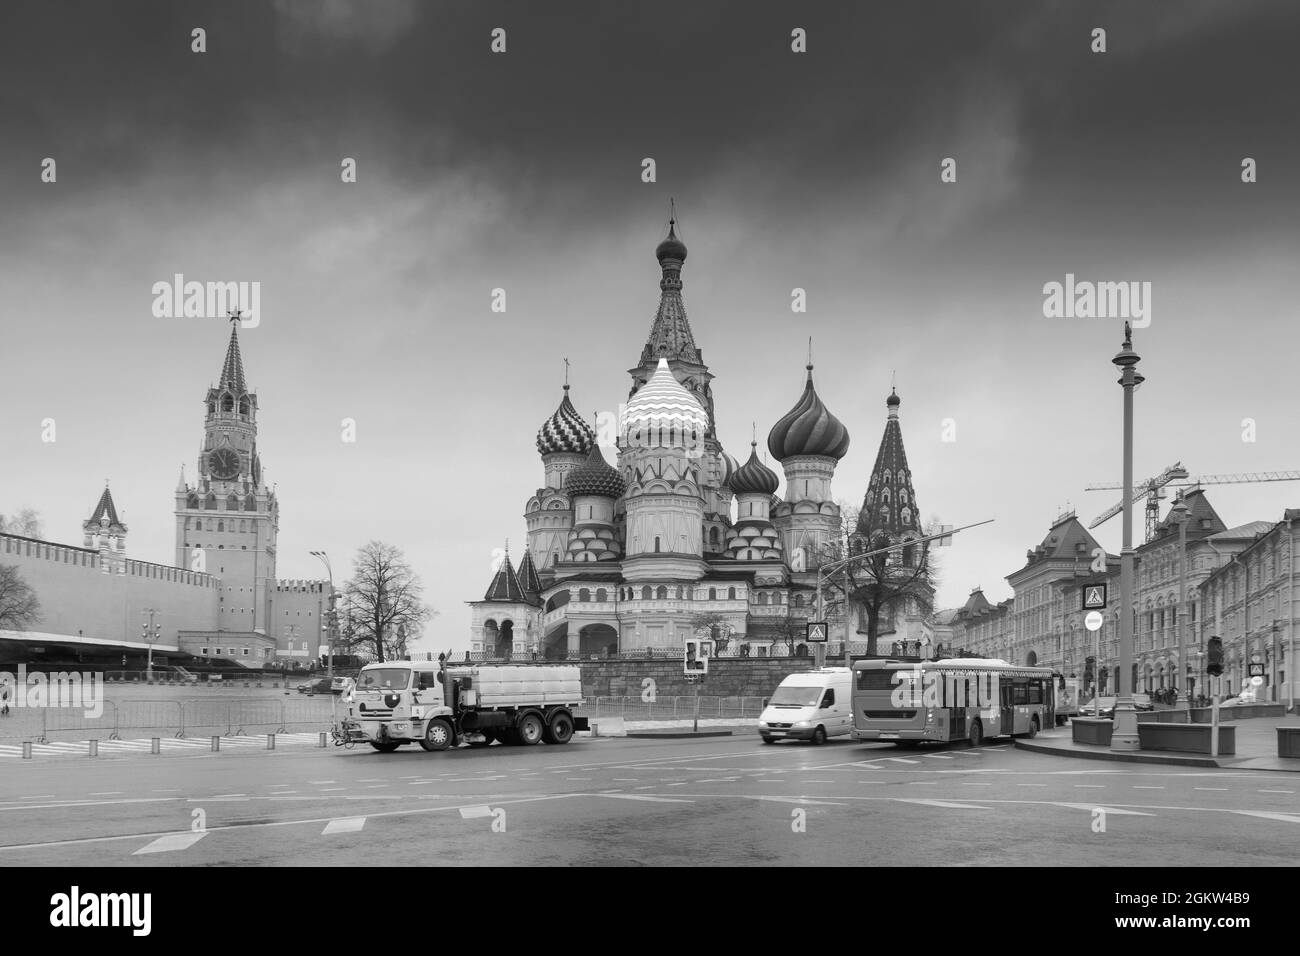 MOSCA, RUSSIA - 26 APRILE 2018 : Vista in bianco e nero delle torri del Cremlino nella Piazza Rossa di Mosca. Architettura di Mosca, Russia. E' un turista famoso in tutto il mondo Foto Stock